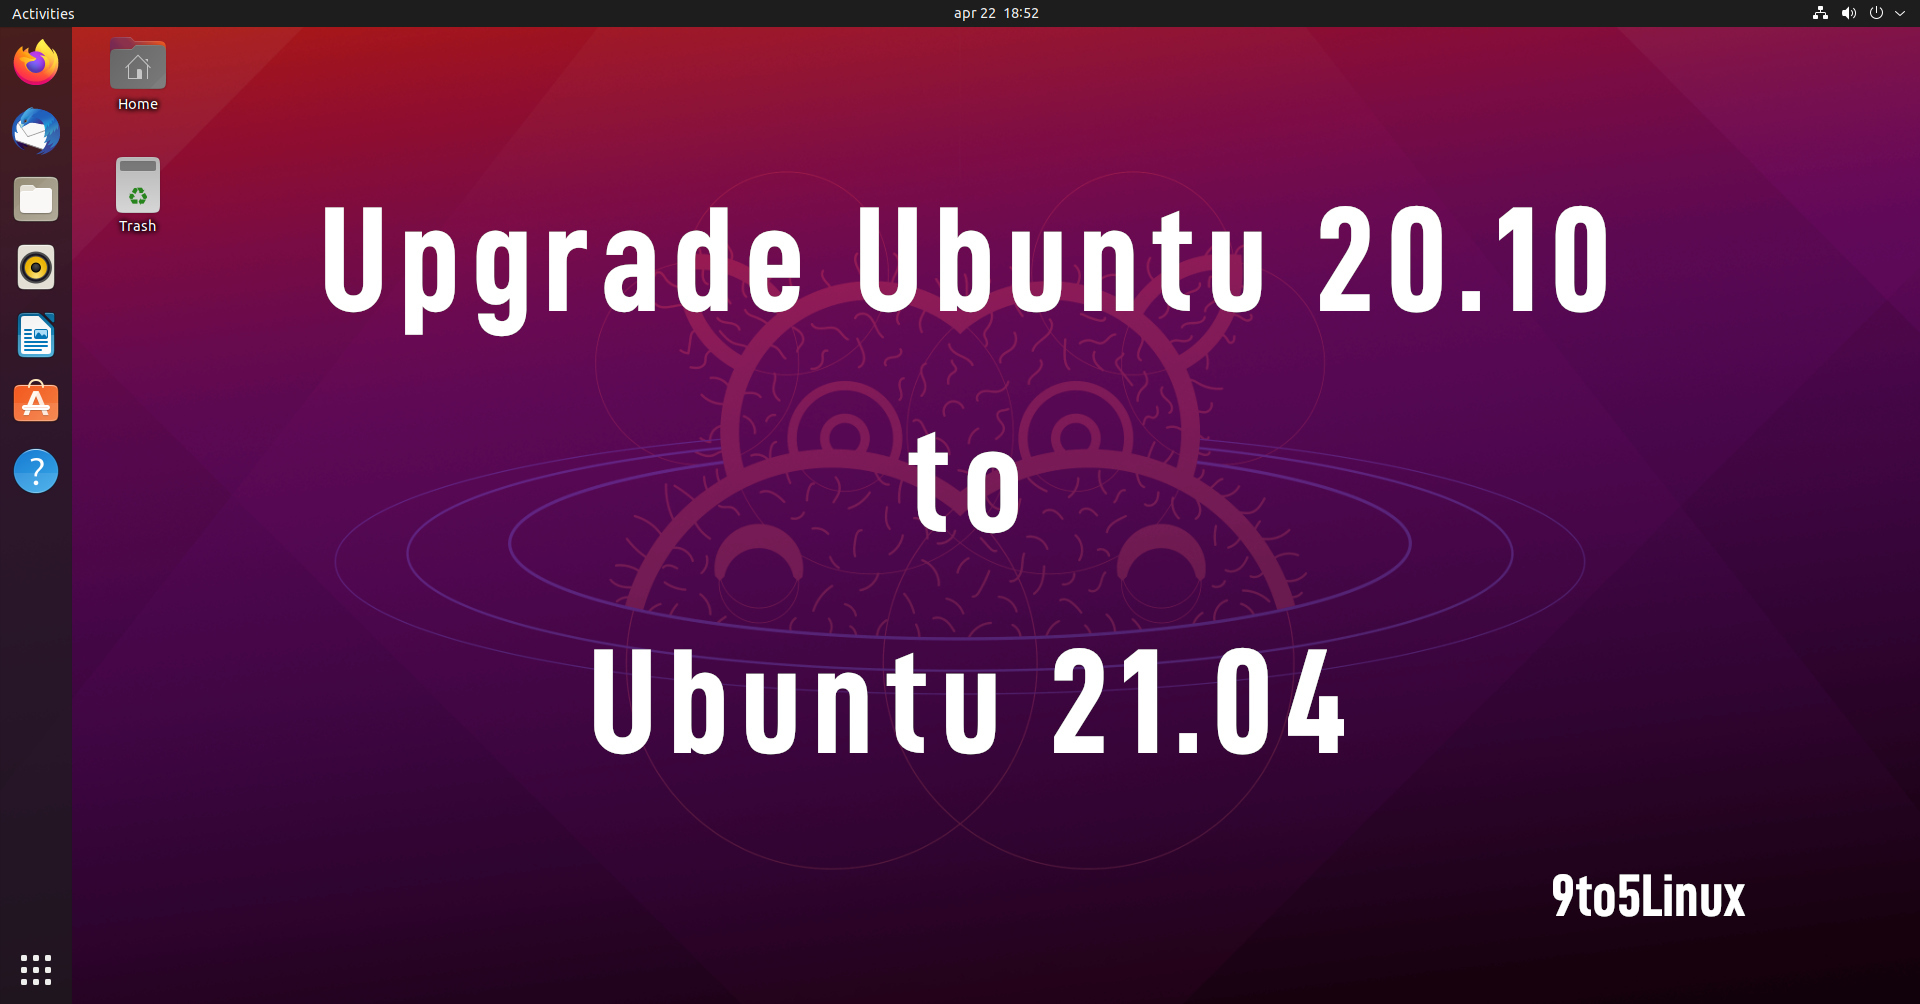 You Can Now Upgrade Ubuntu 20.10 to Ubuntu 21.04, Here’s How